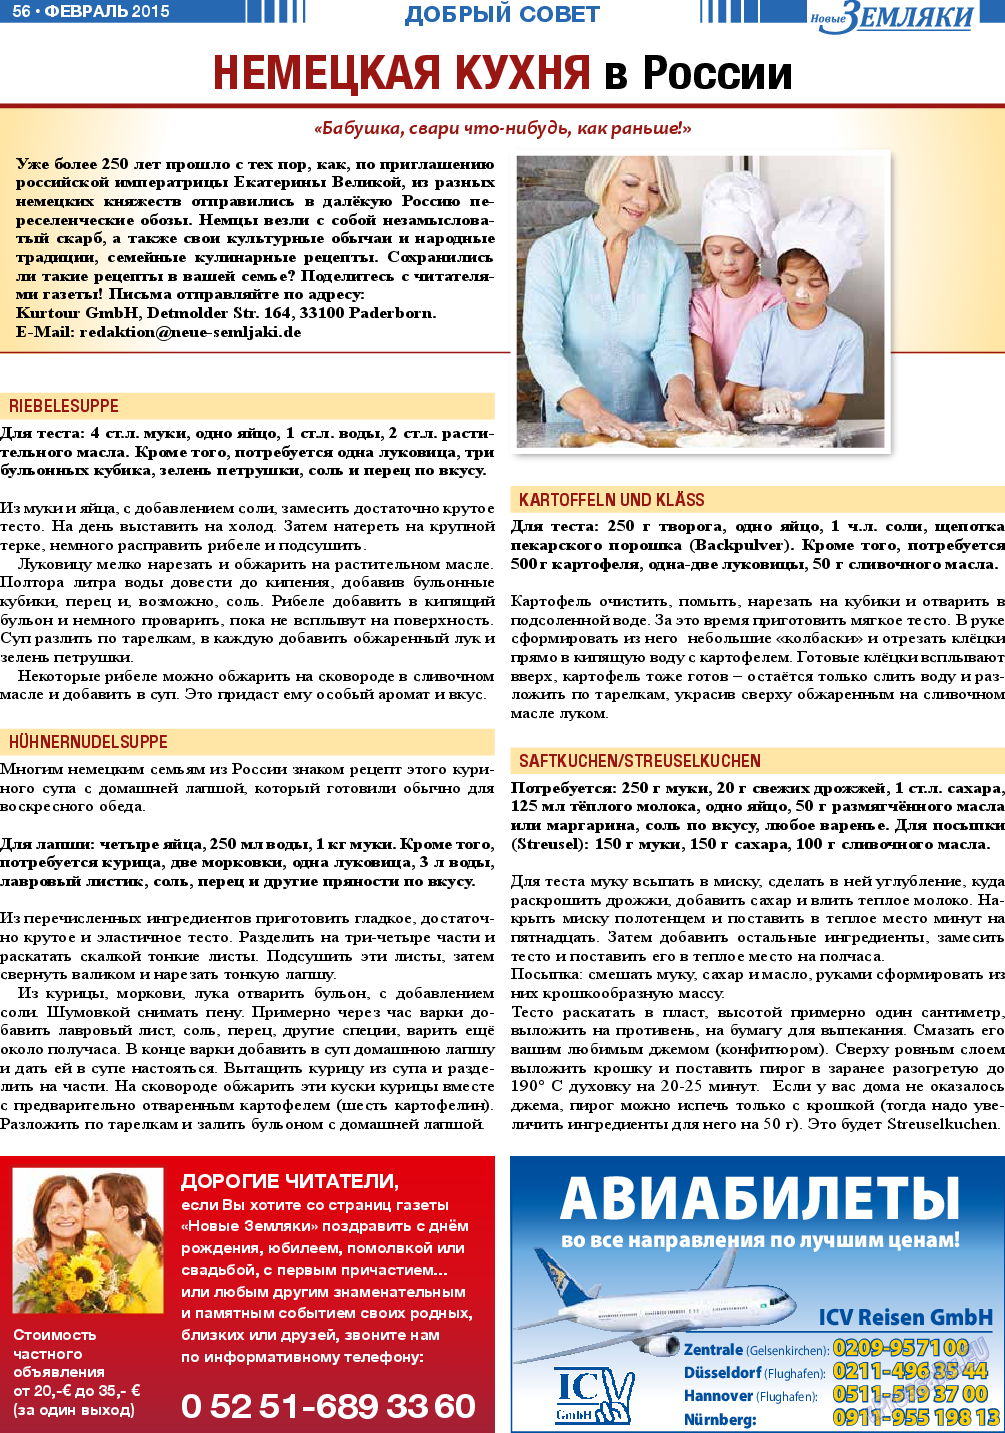 Новые Земляки, газета. 2015 №2 стр.56